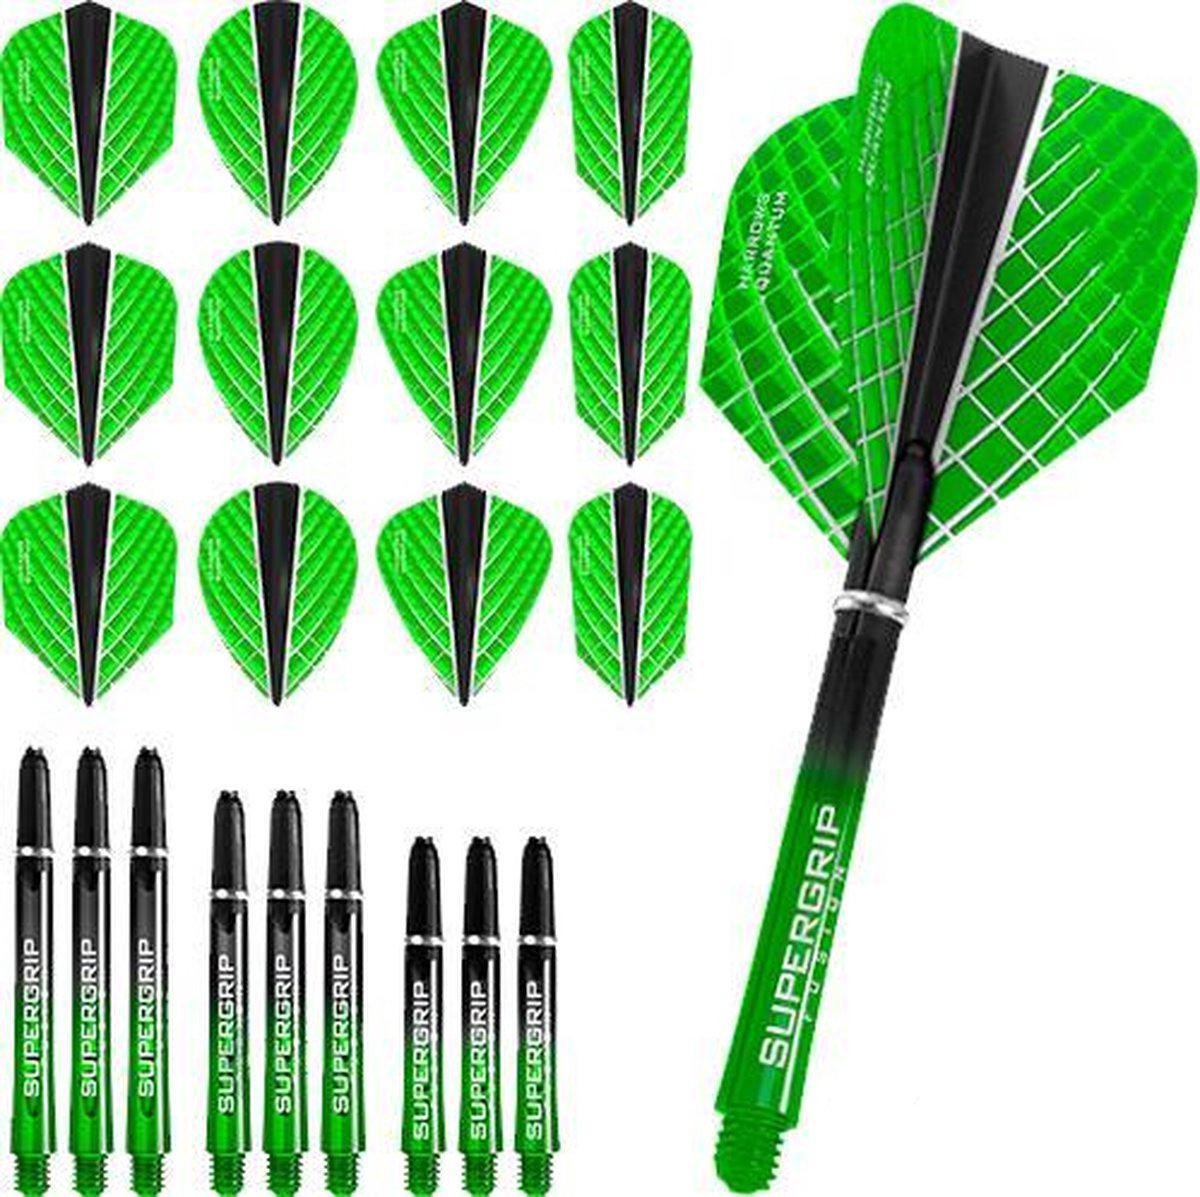 Dragon Darts - Harrows - Combi kit - Quantum-X - 3 sets darts shafts - 4 sets darts flights - Groen